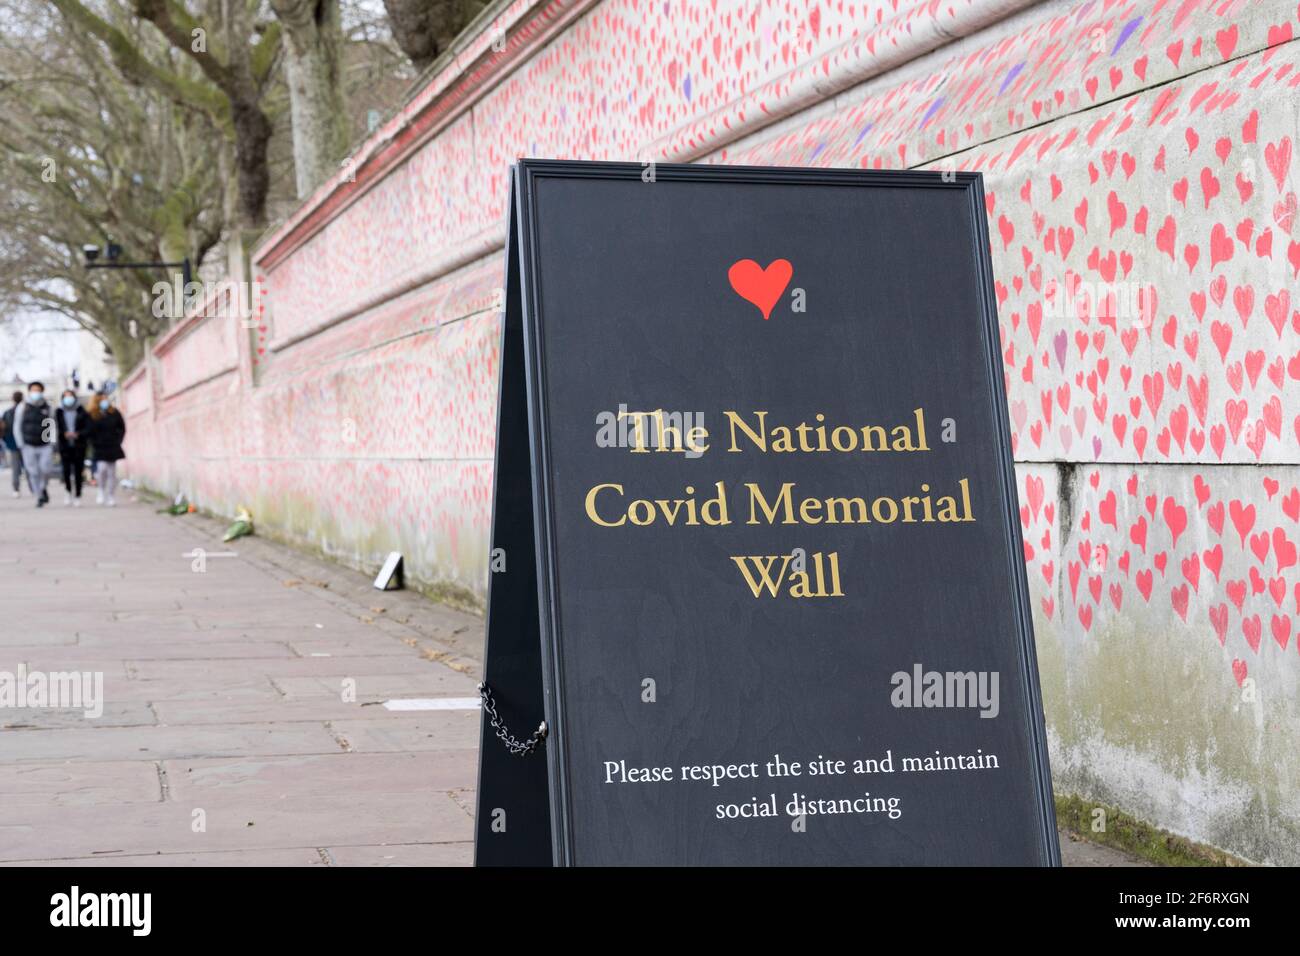 Le mur national du mémorial des Covid, banque sud de Londres, Angleterre Banque D'Images